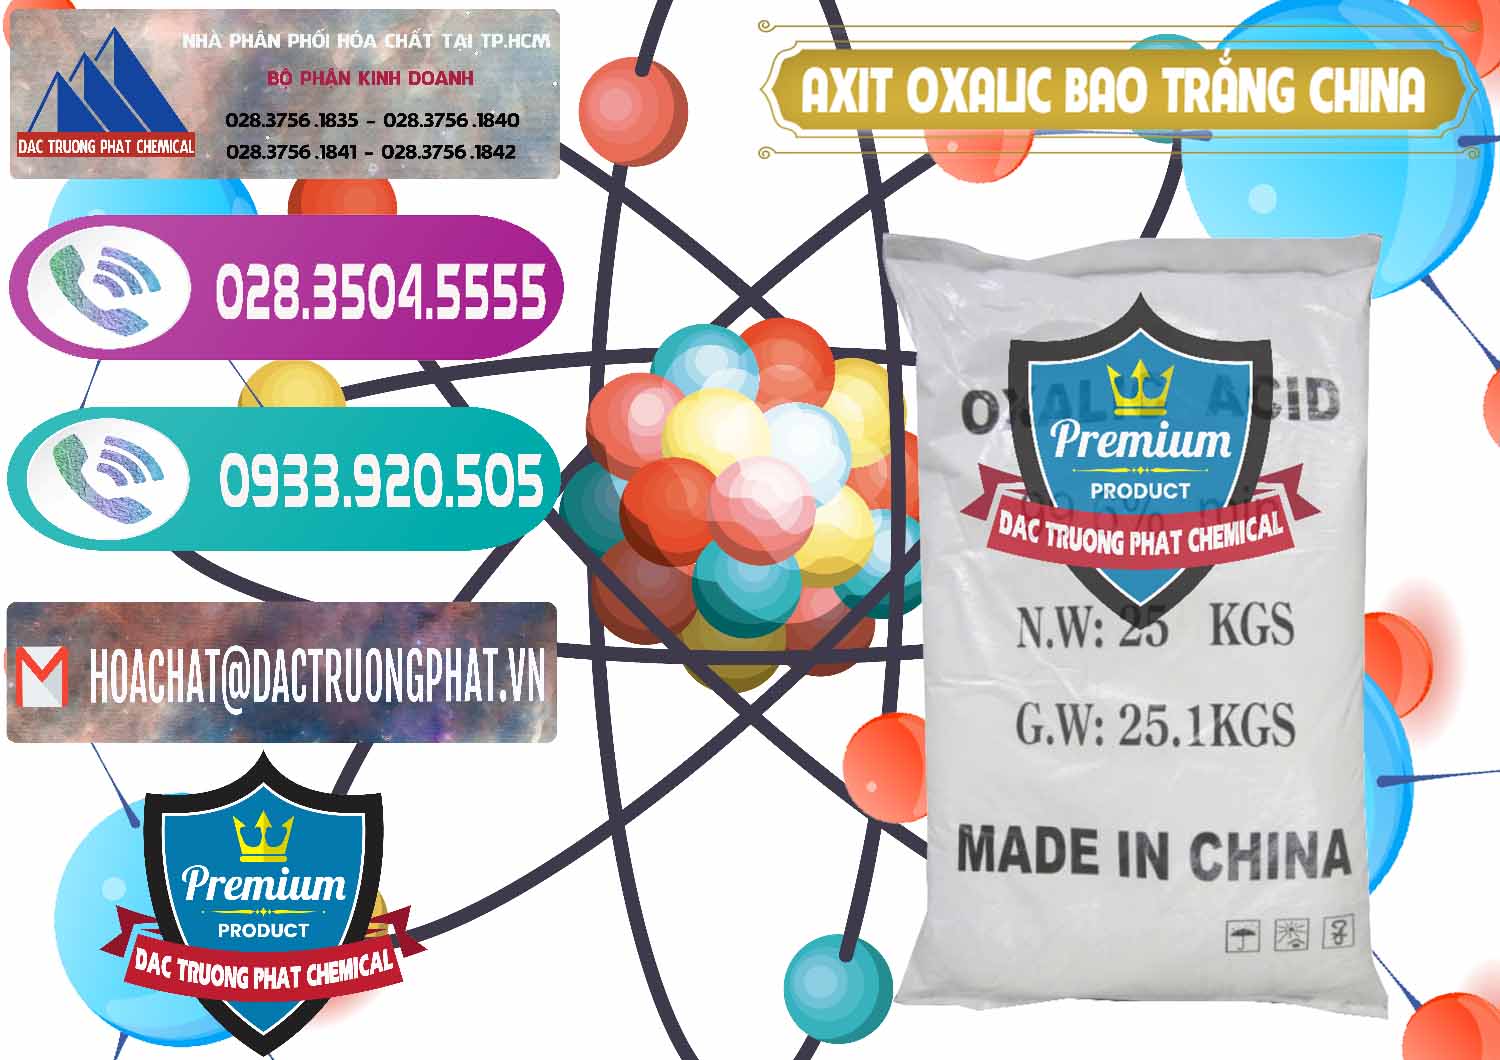 Đơn vị chuyên phân phối _ bán Acid Oxalic – Axit Oxalic 99.6% Bao Trắng Trung Quốc China - 0270 - Công ty chuyên cung cấp ( kinh doanh ) hóa chất tại TP.HCM - hoachatxulynuoc.com